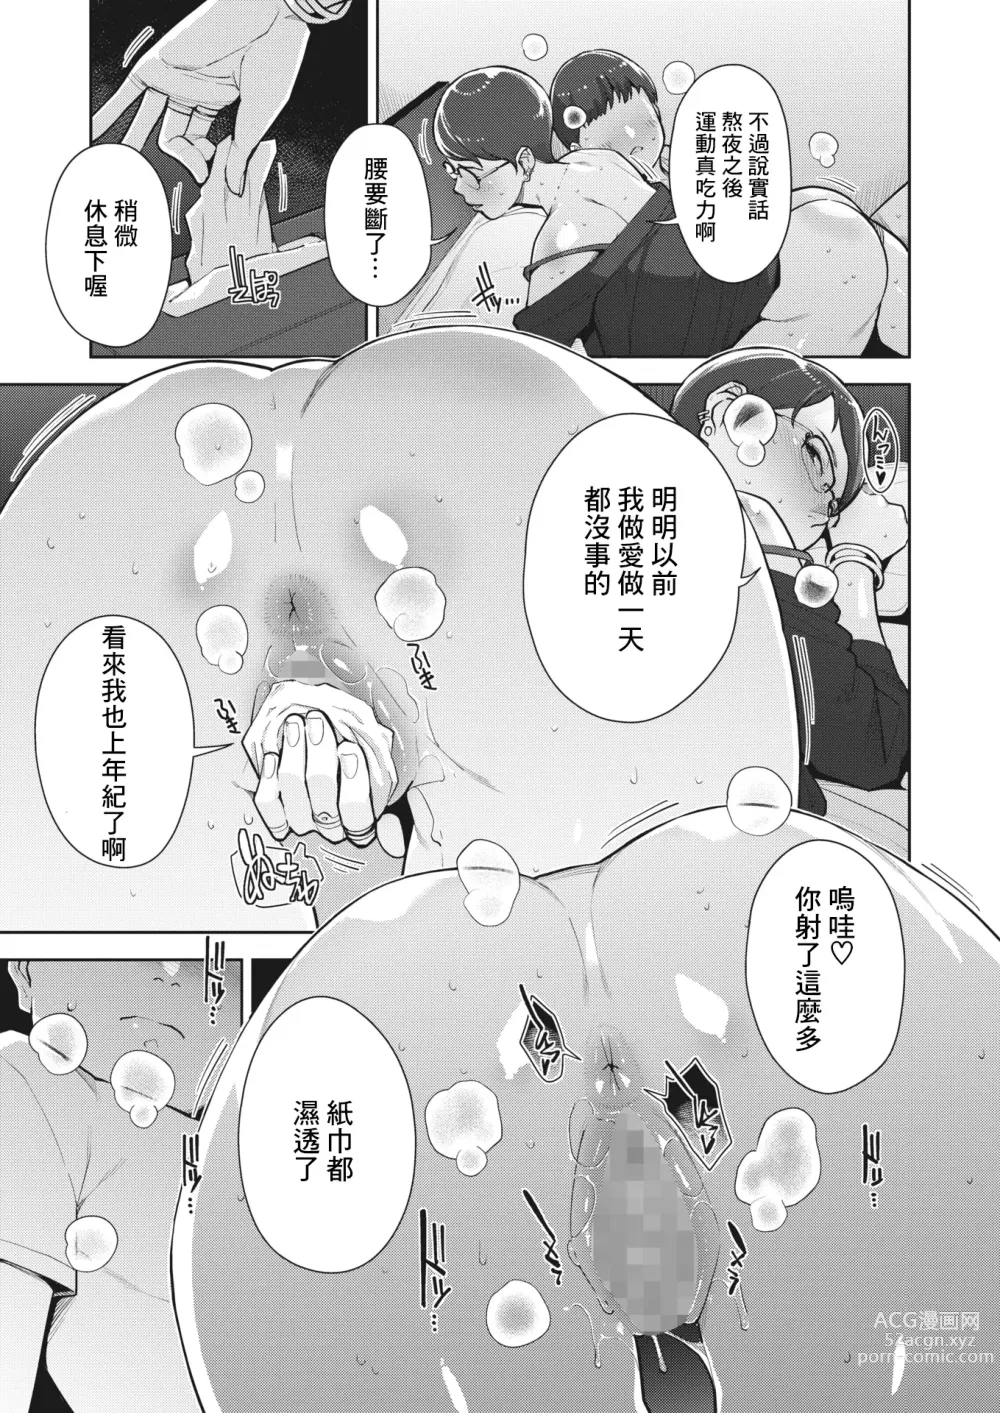 Page 23 of manga Irodori Kazoku Ch. 2